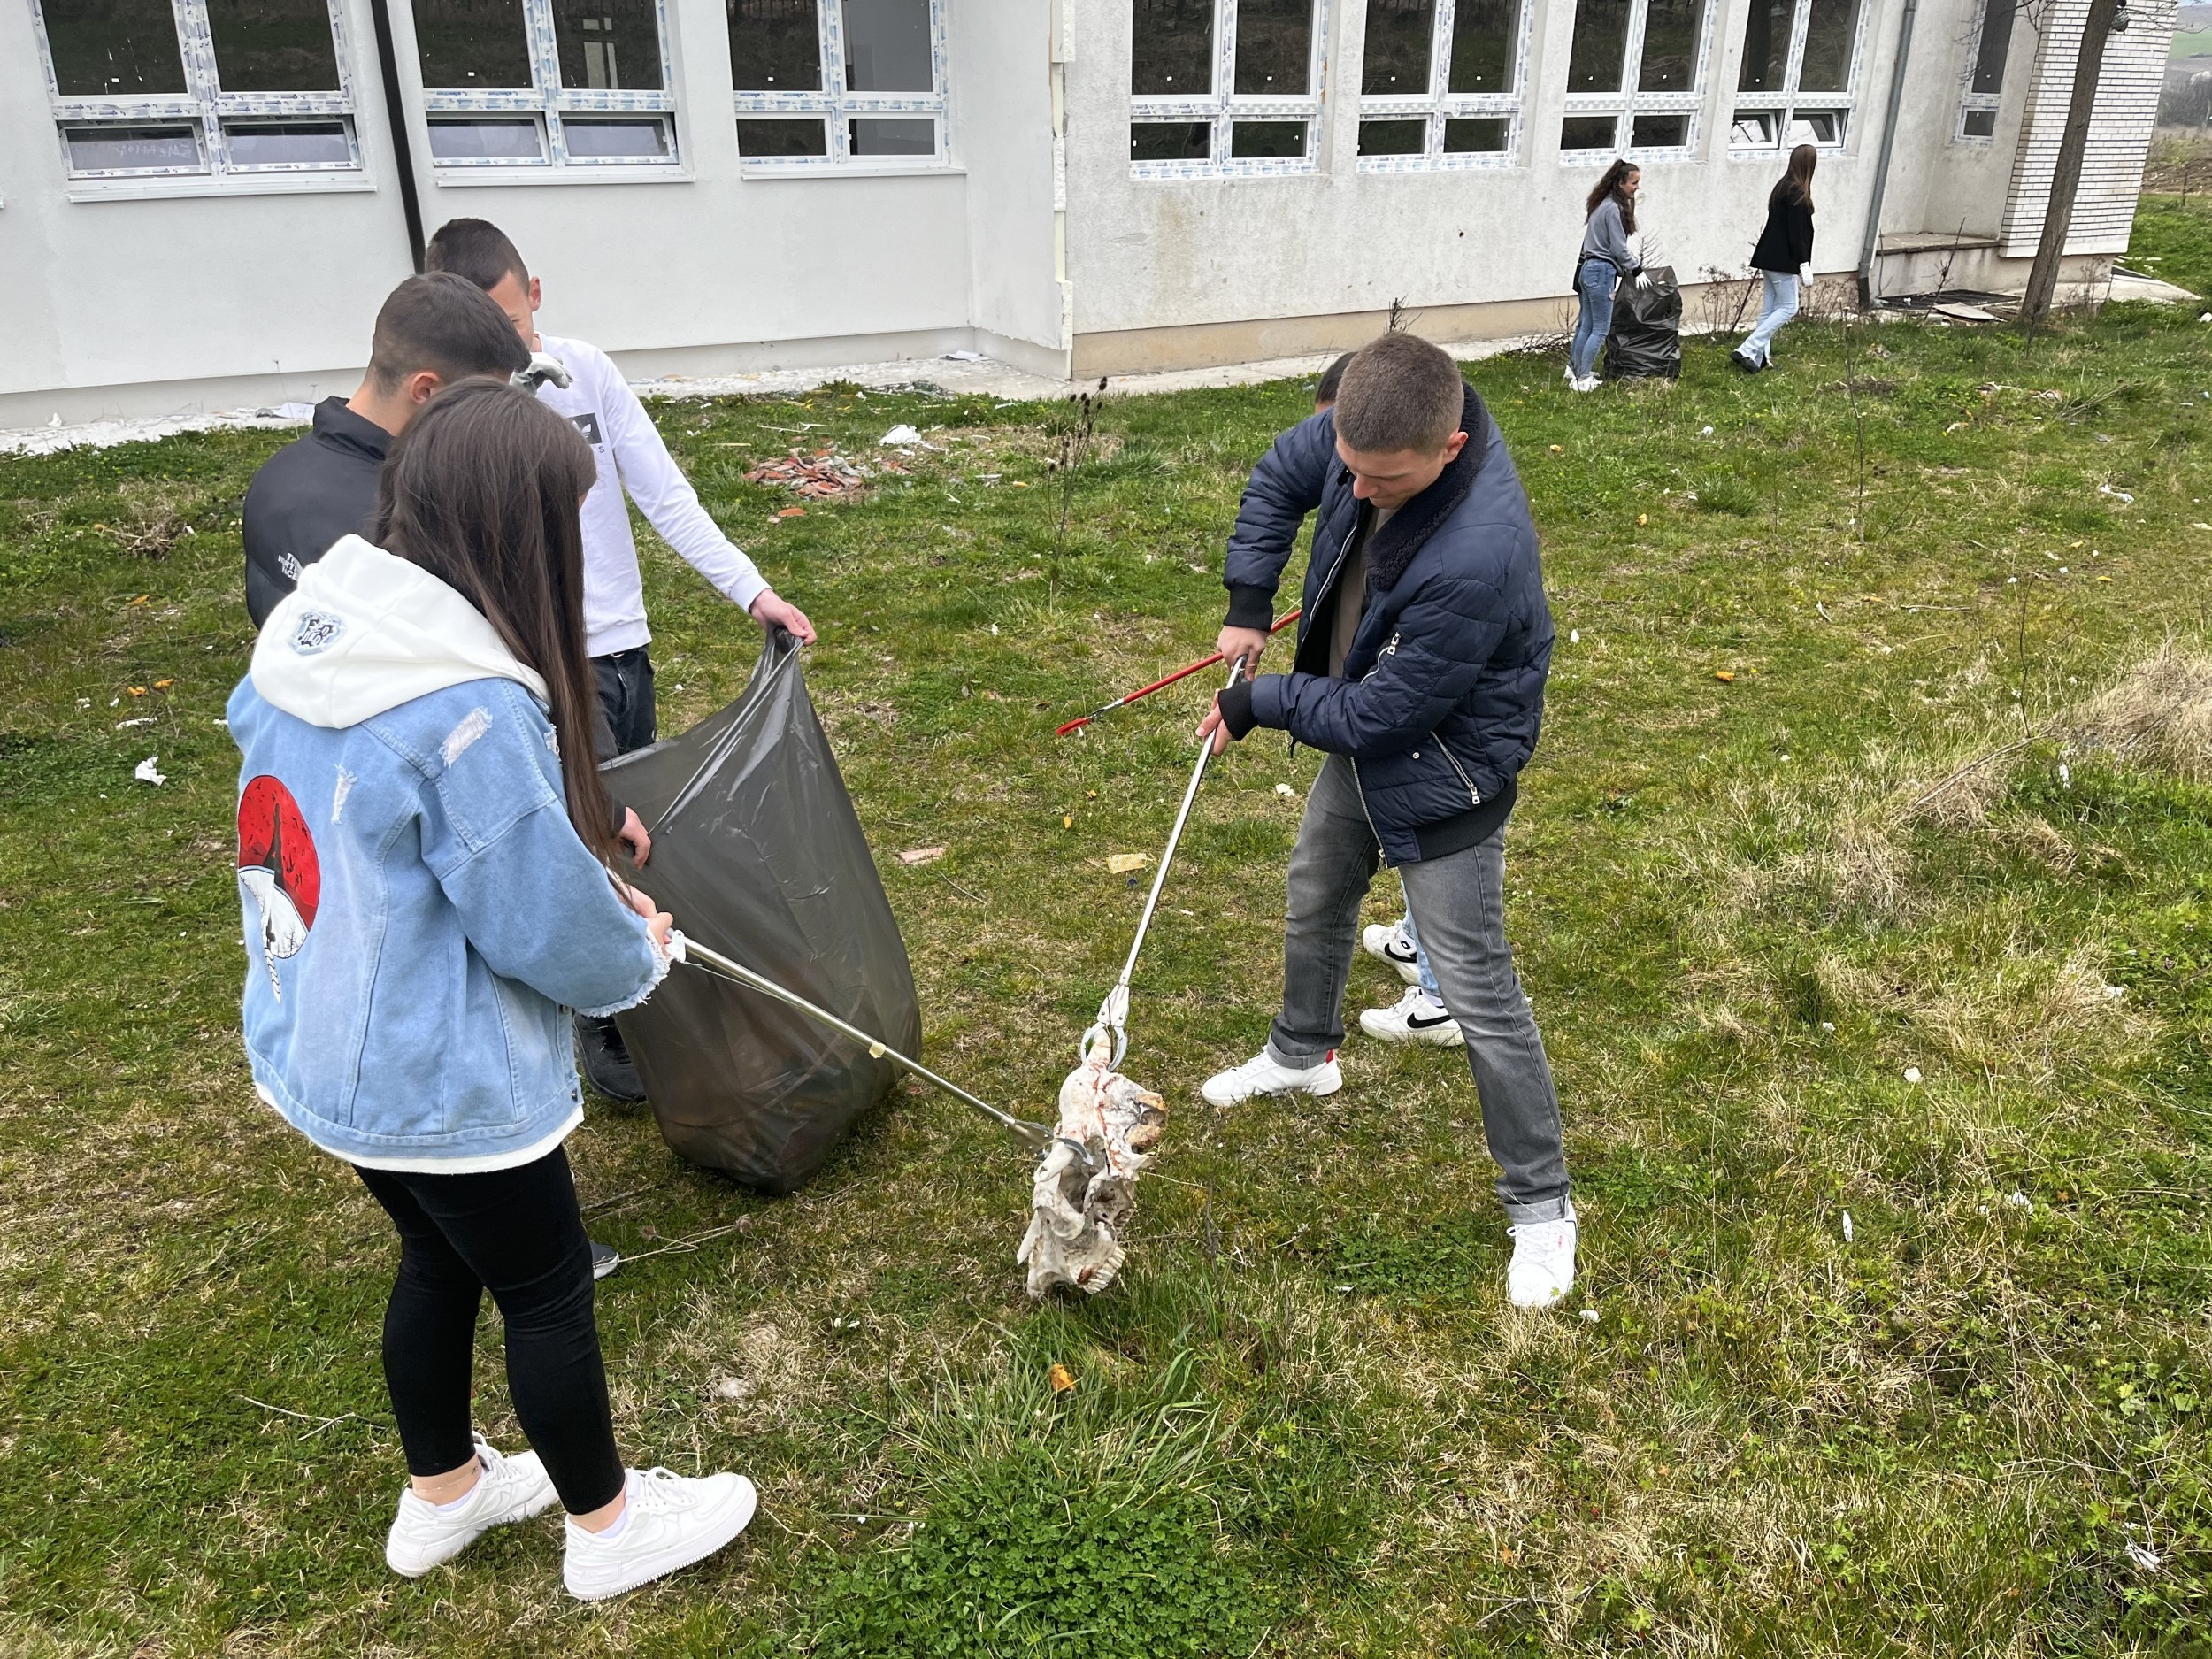 Aksion pastrimi me nxënësit shkollës së mesme “12 Maji” në Ratkoc